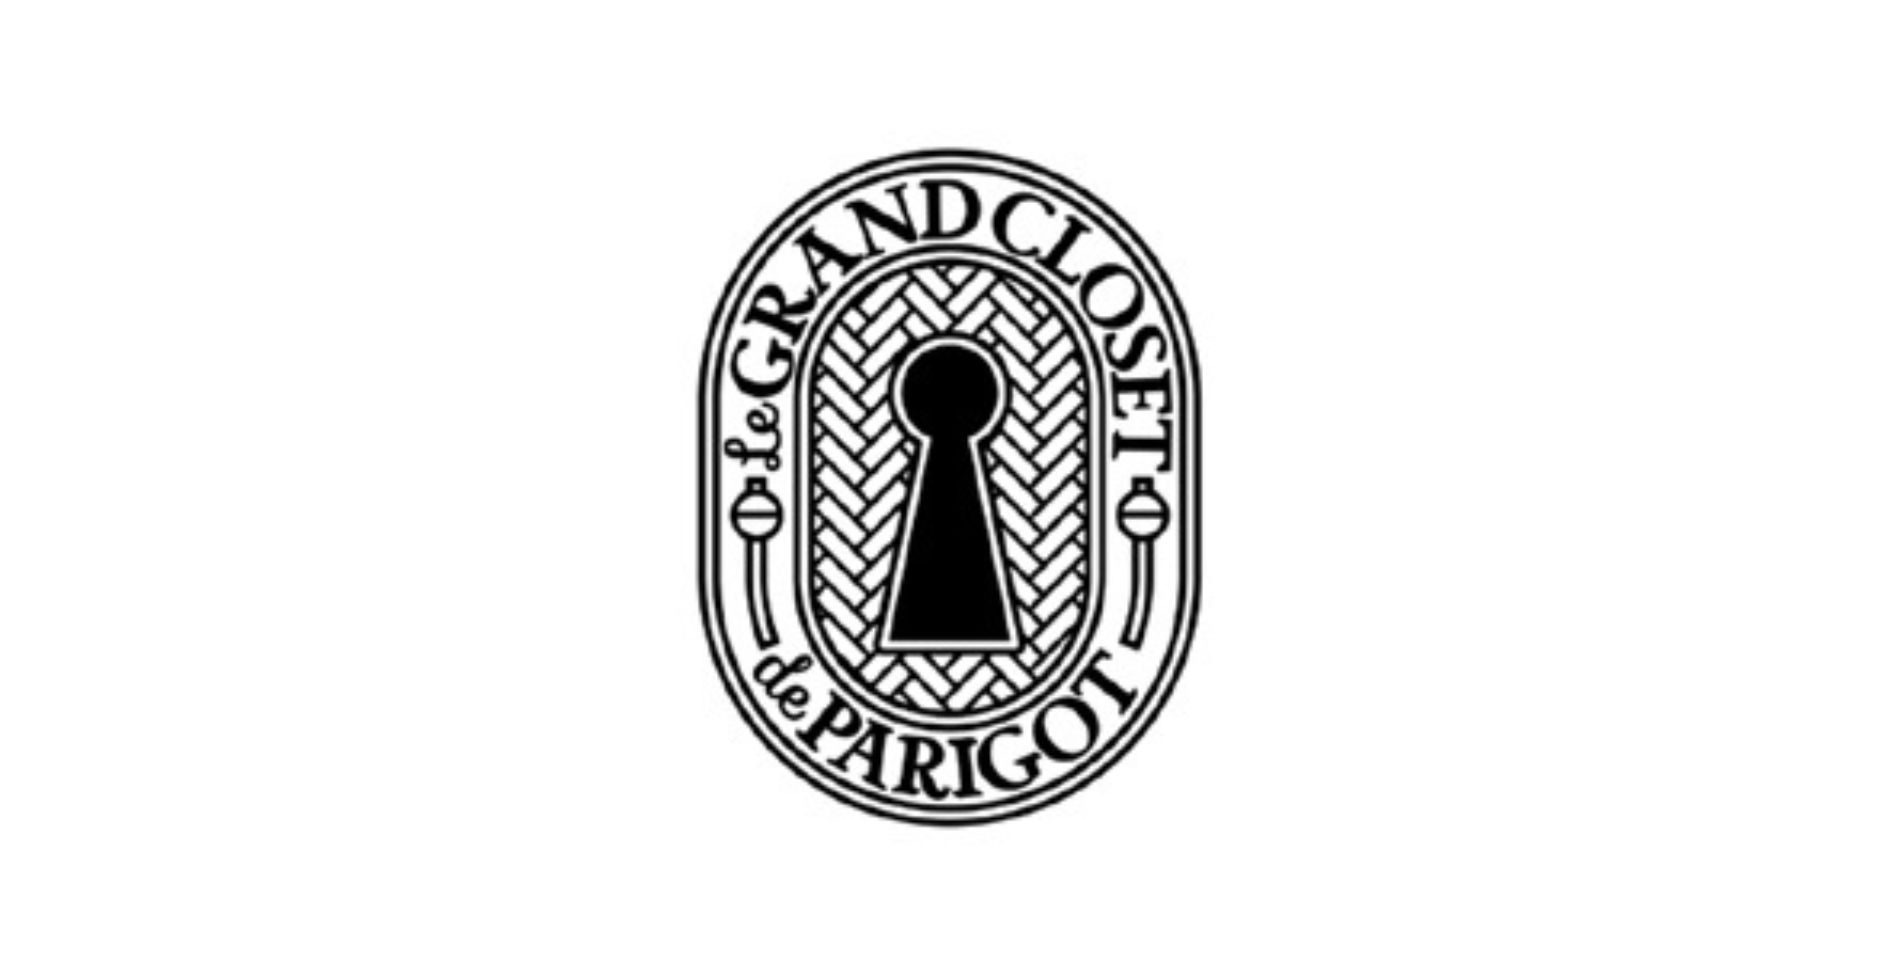 11月開業「麻布台ヒルズ」に、パリゴの新業態「Le GRAND CLOSET de PARIGOT」 (ル グランド クローゼット ドゥ パリゴ)がオープン